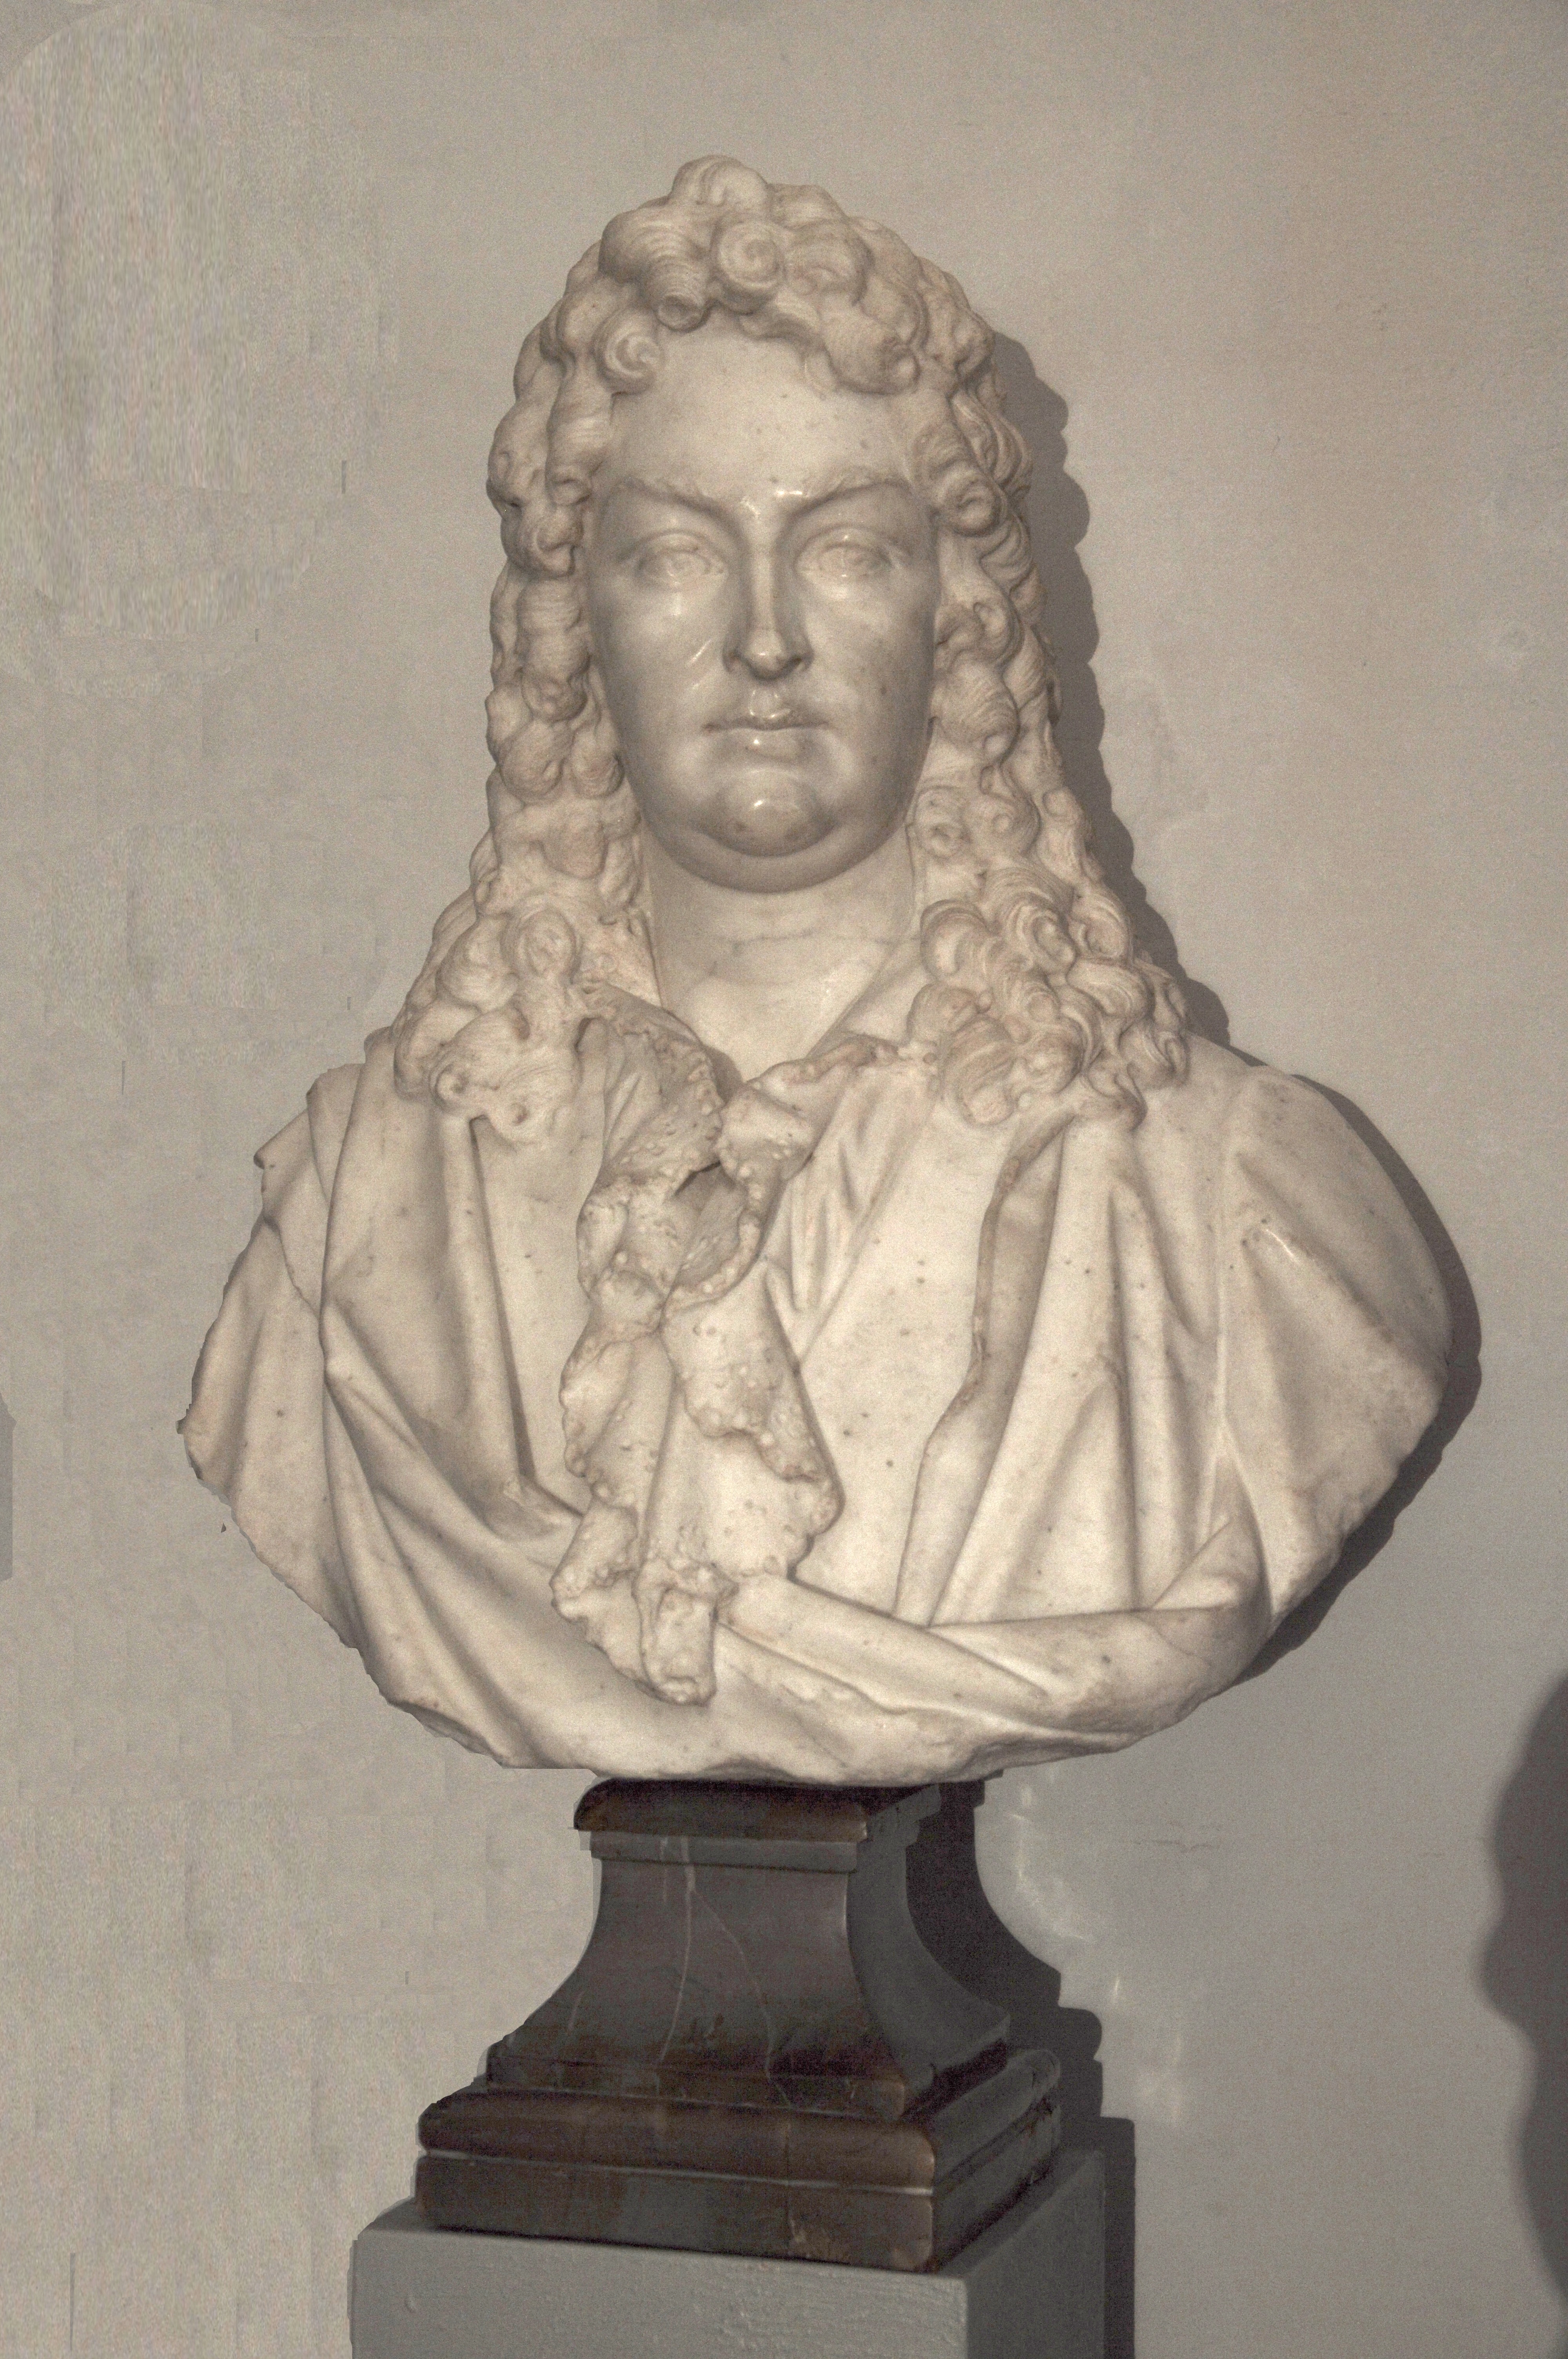 Donato alle Gallerie degli Uffizi il busto del celebre cantante fiorentino Gaetano Berenstadt, realizzato da Giovacchino Fortini